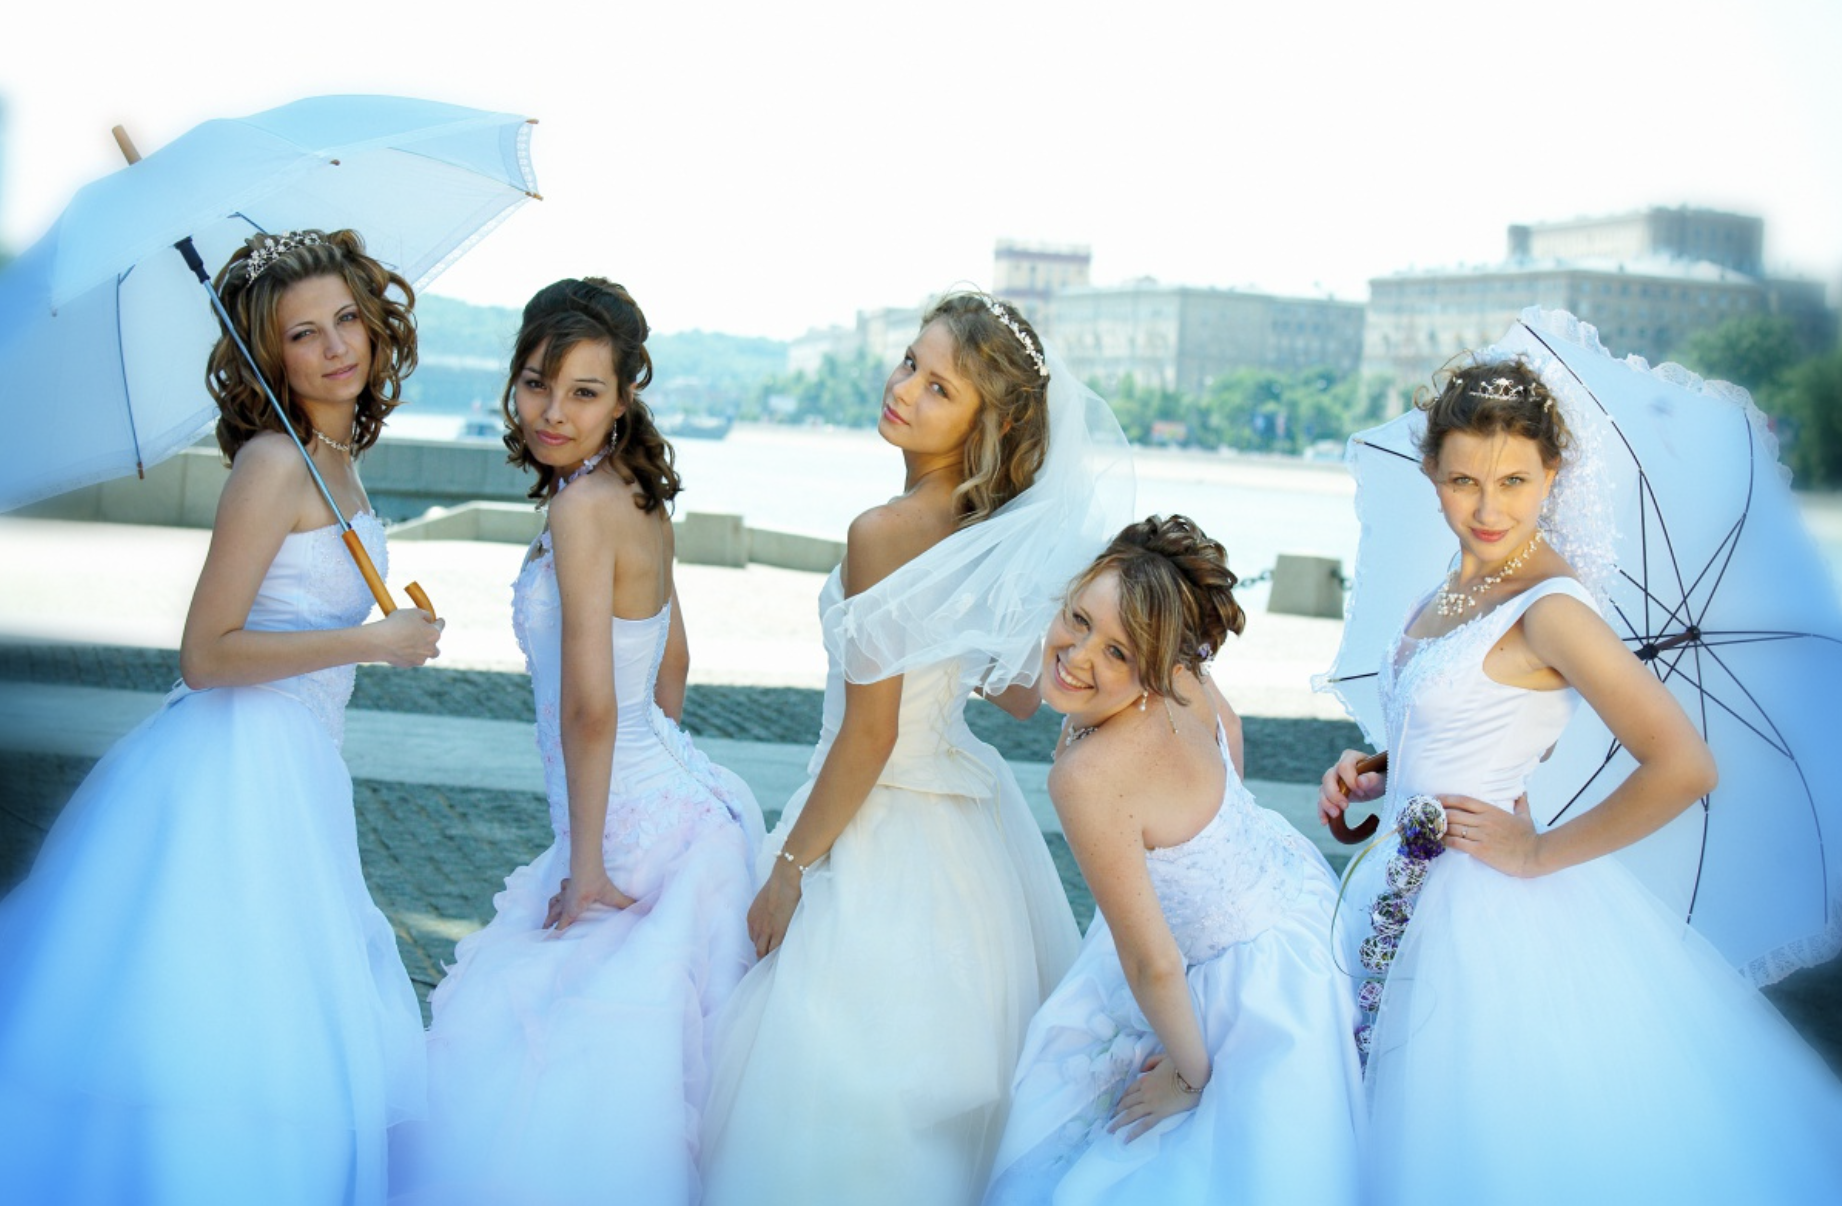 "¡Te pillamos!" 5 mujeres vestidas de novia interrumpieron nuestra ceremonia y se dirigieron a mi prometido